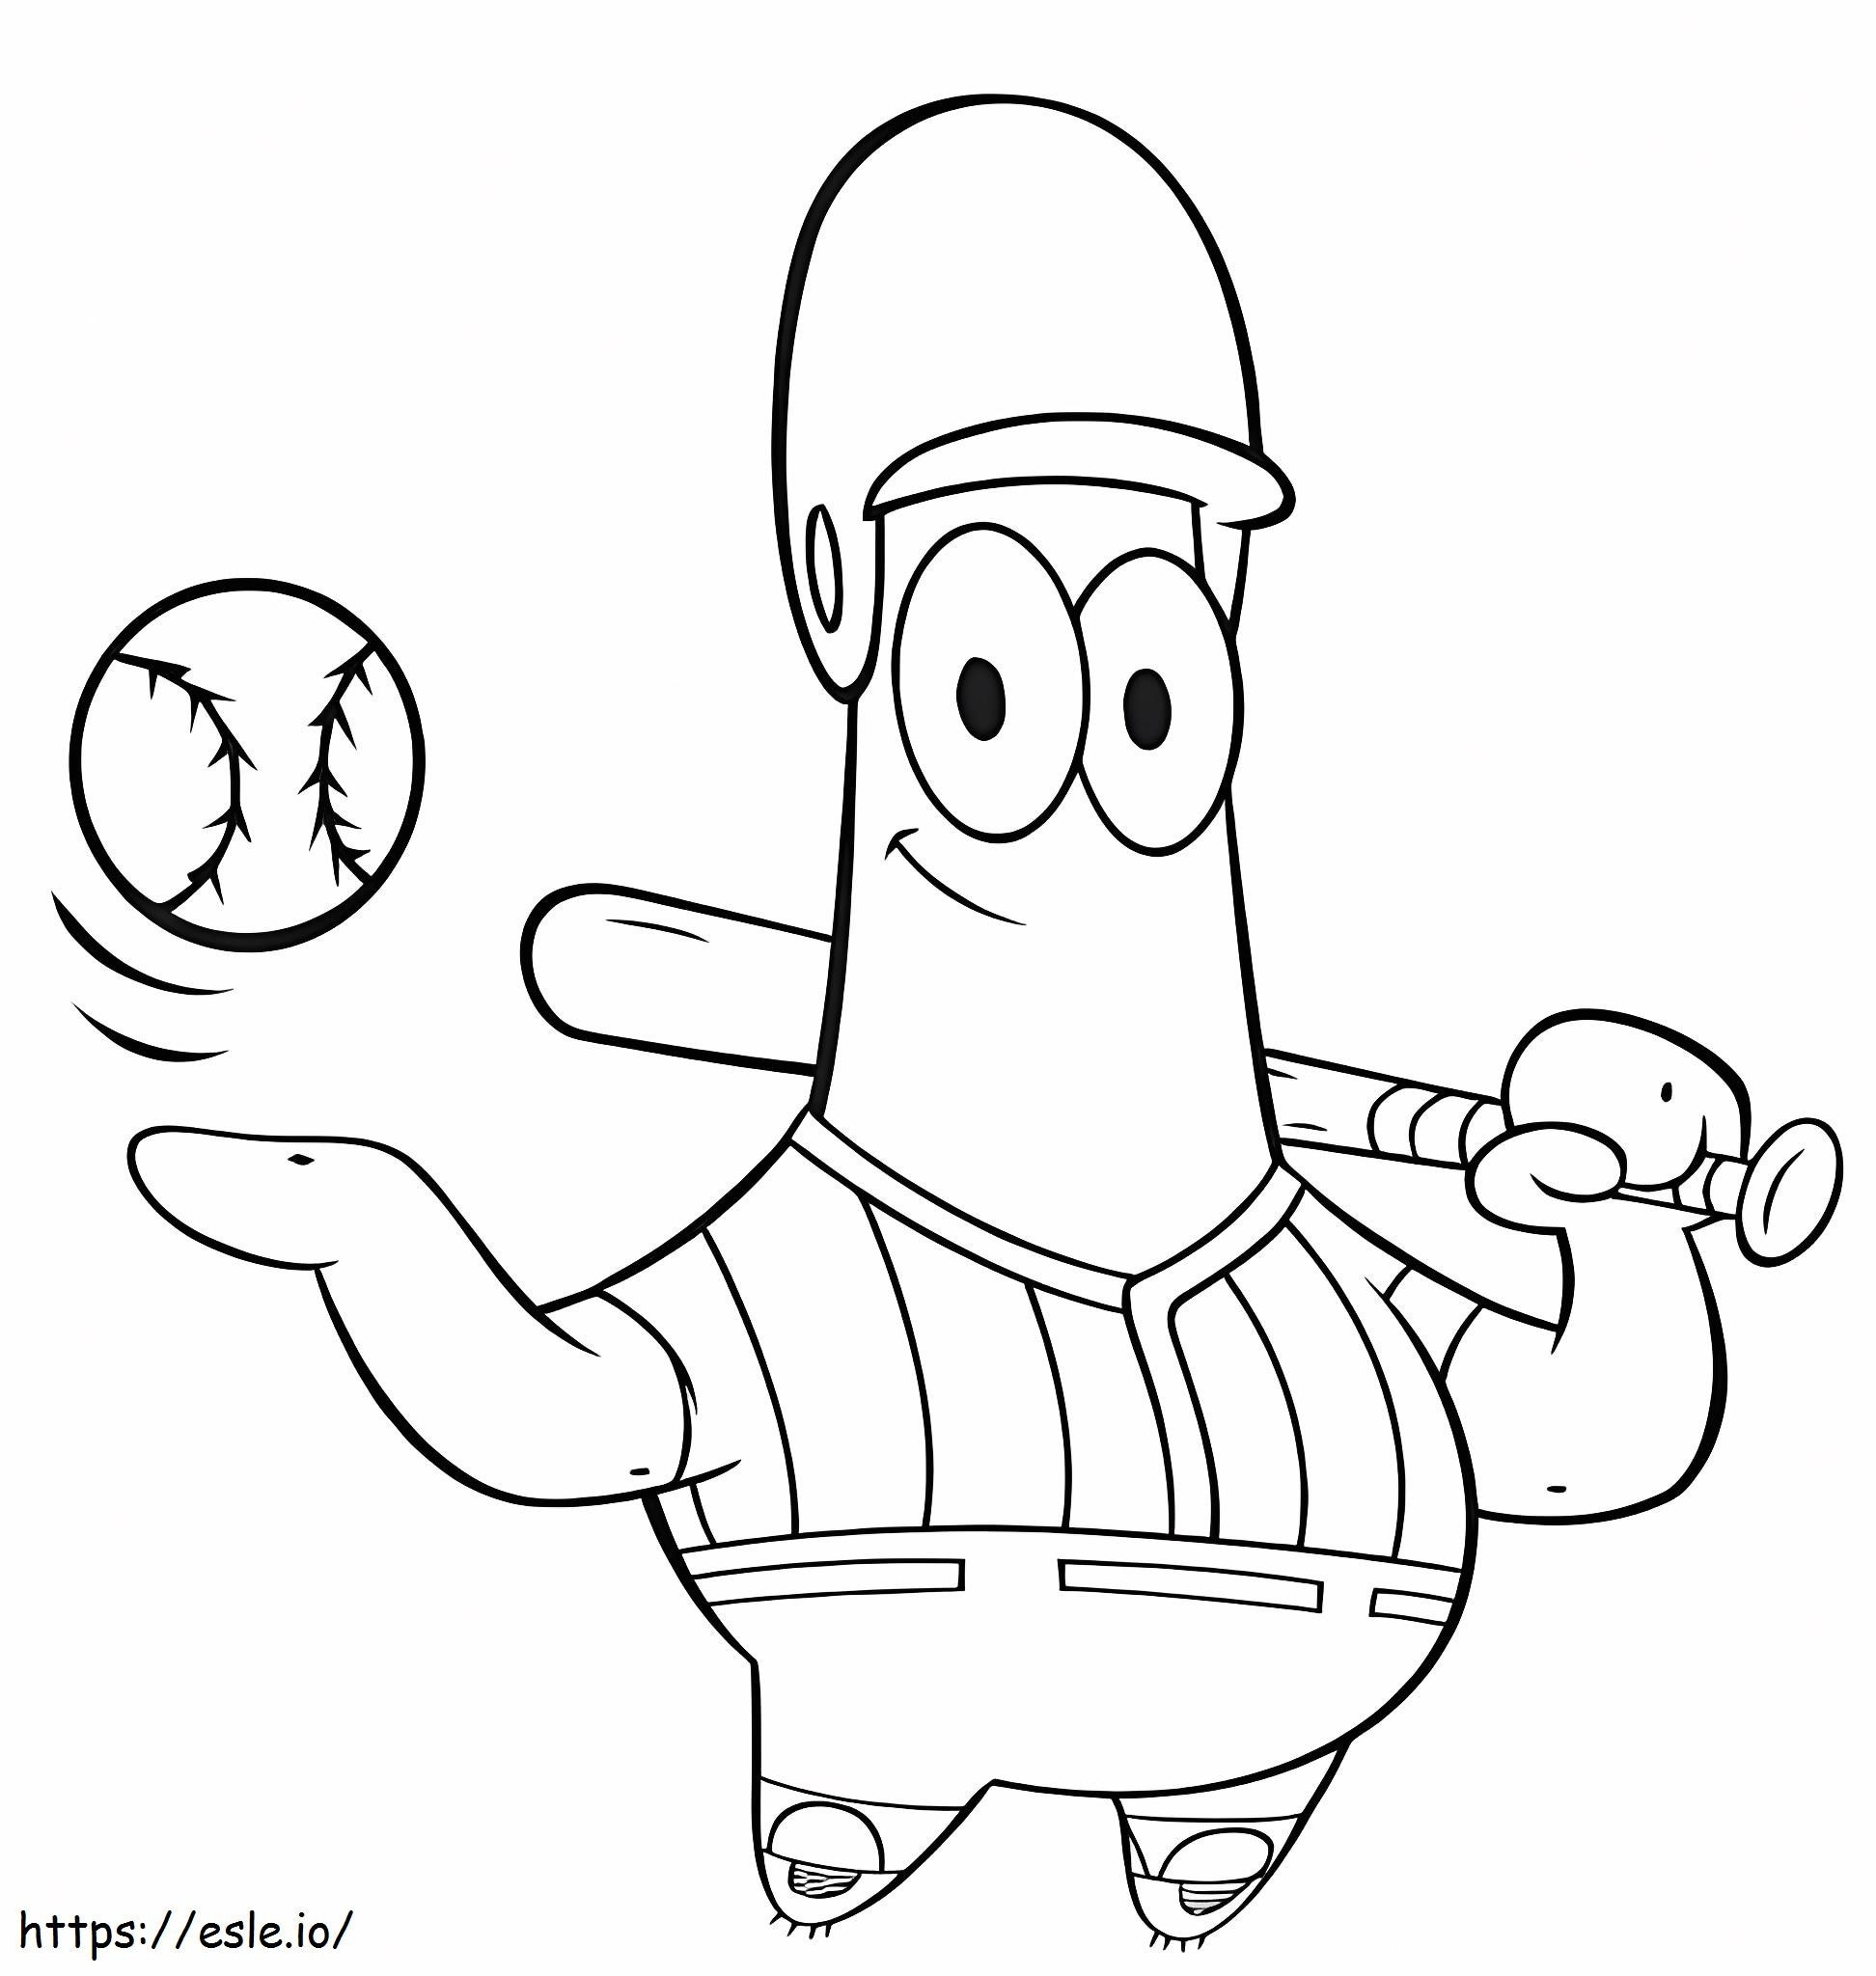 Baseball Player Patrick Star coloring page